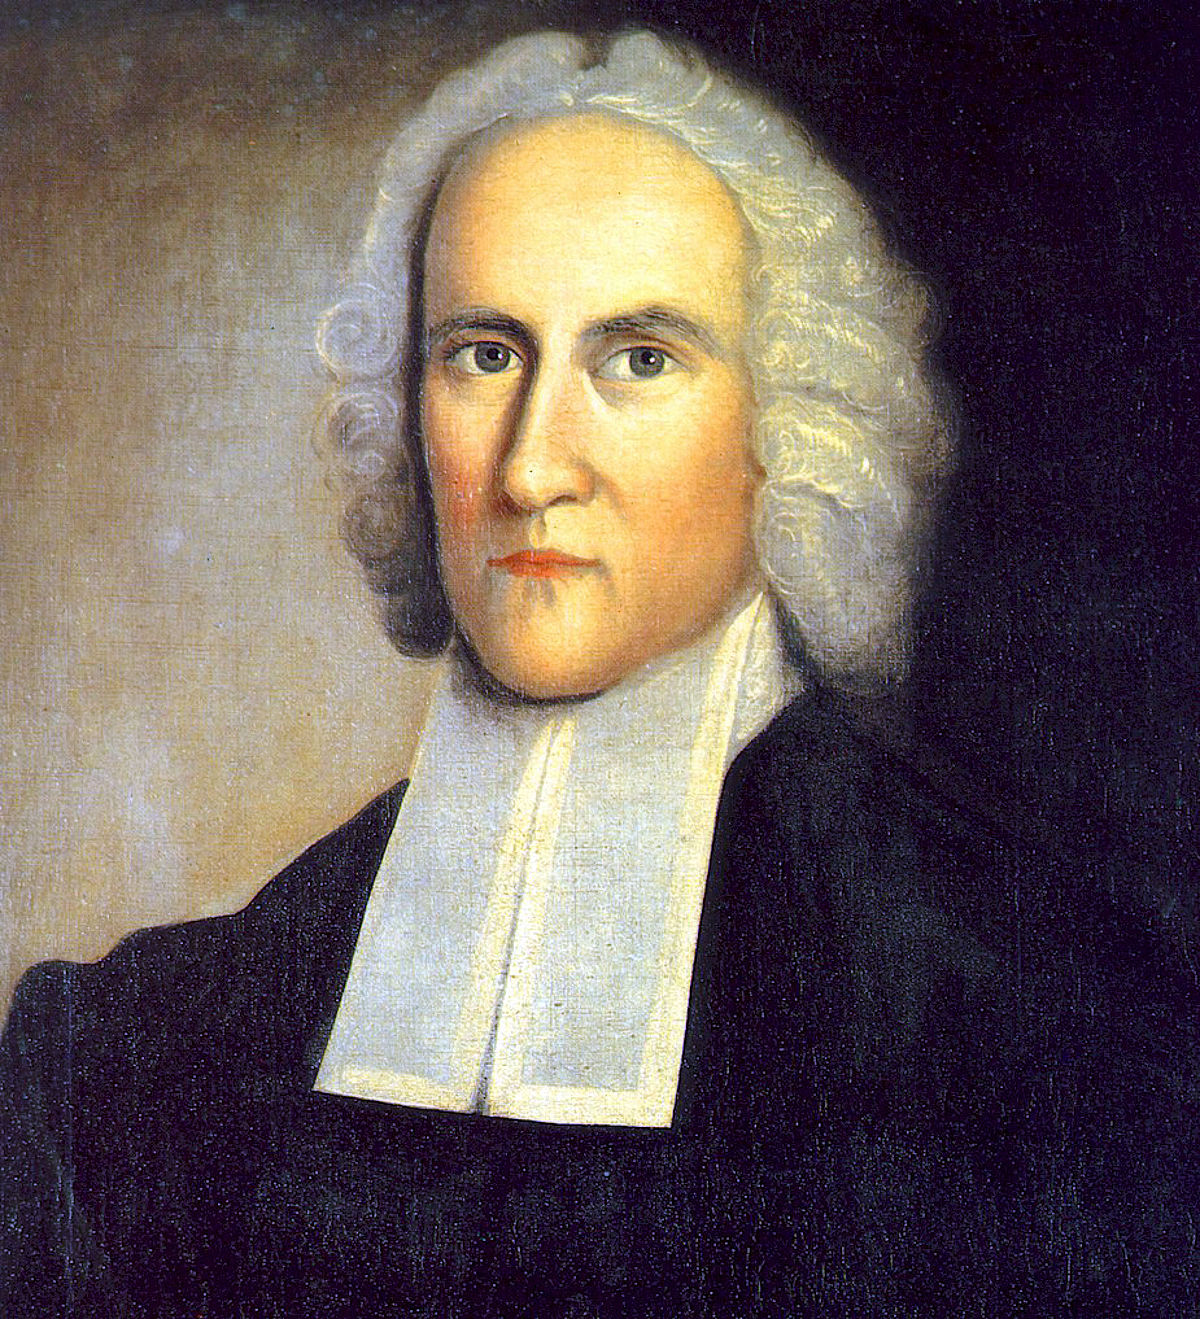 ジョナサン エドワーズ 神学者 Wikipedia